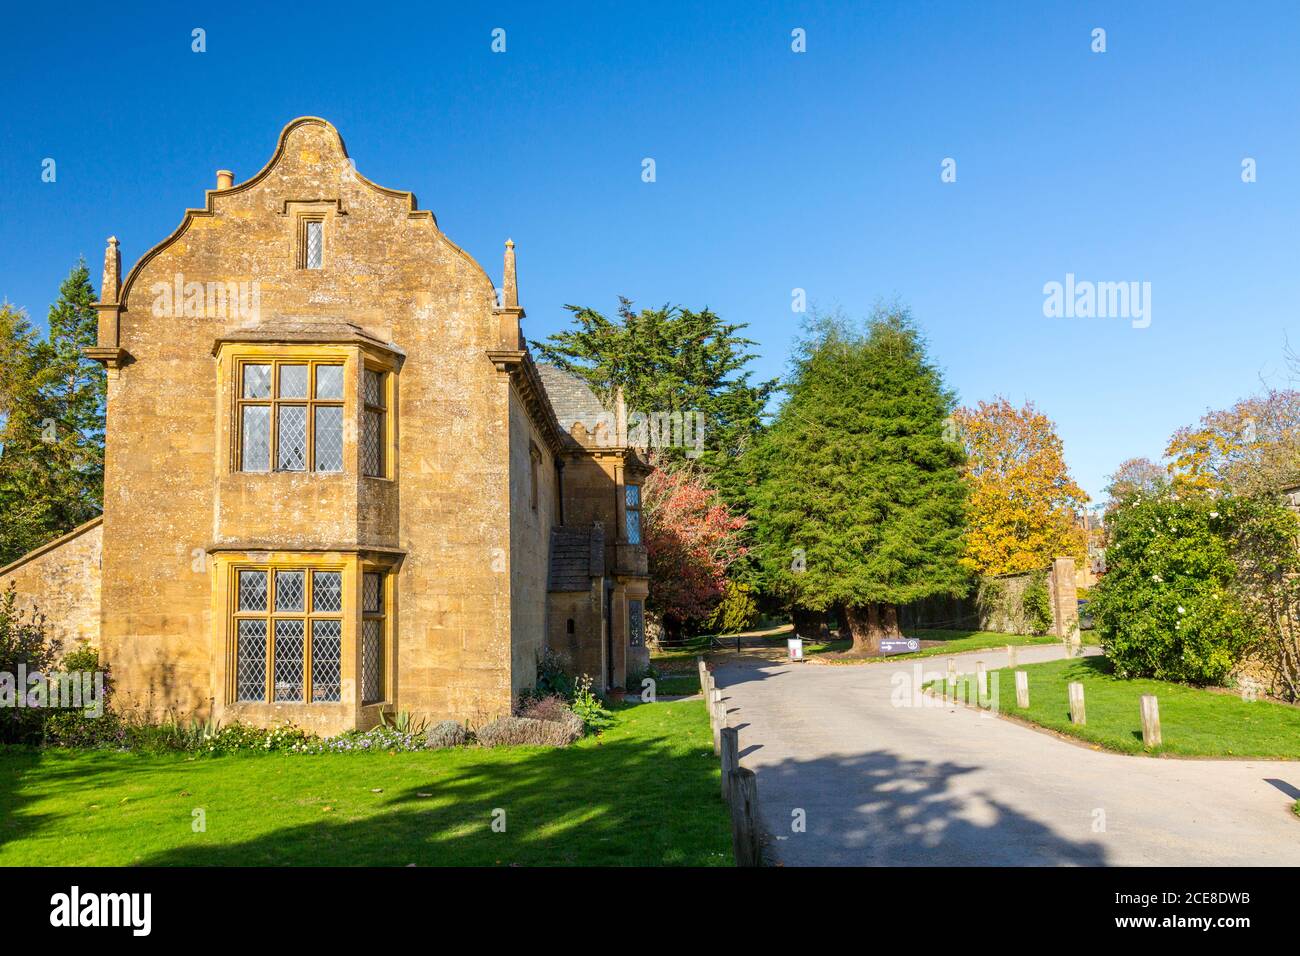 Elizabethan style stone cottage at the entrance to Montacute House, Somerset, England, UK Stock Photo